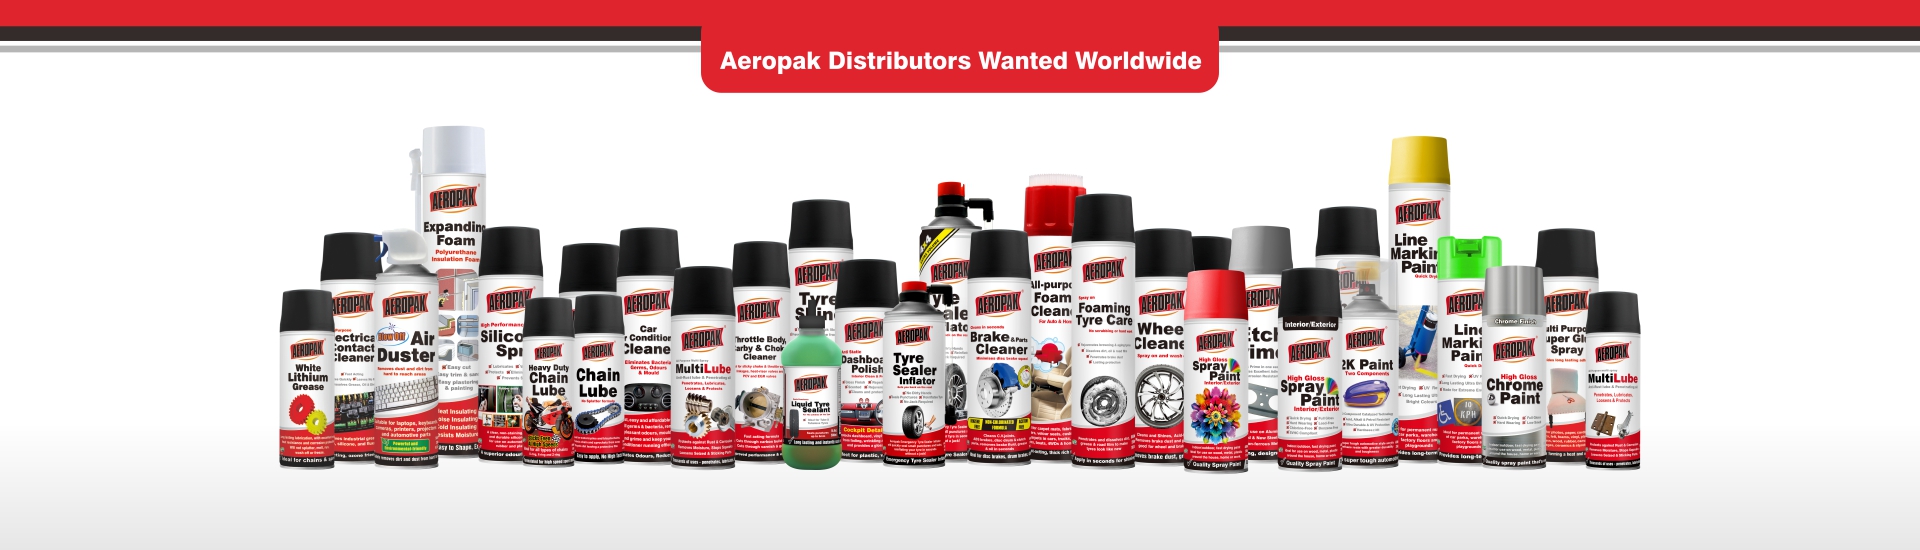 Aeropak Electro Contact Cleaner - SHENZHEN I-LIKE FINE CHEMICAL CO., LTD